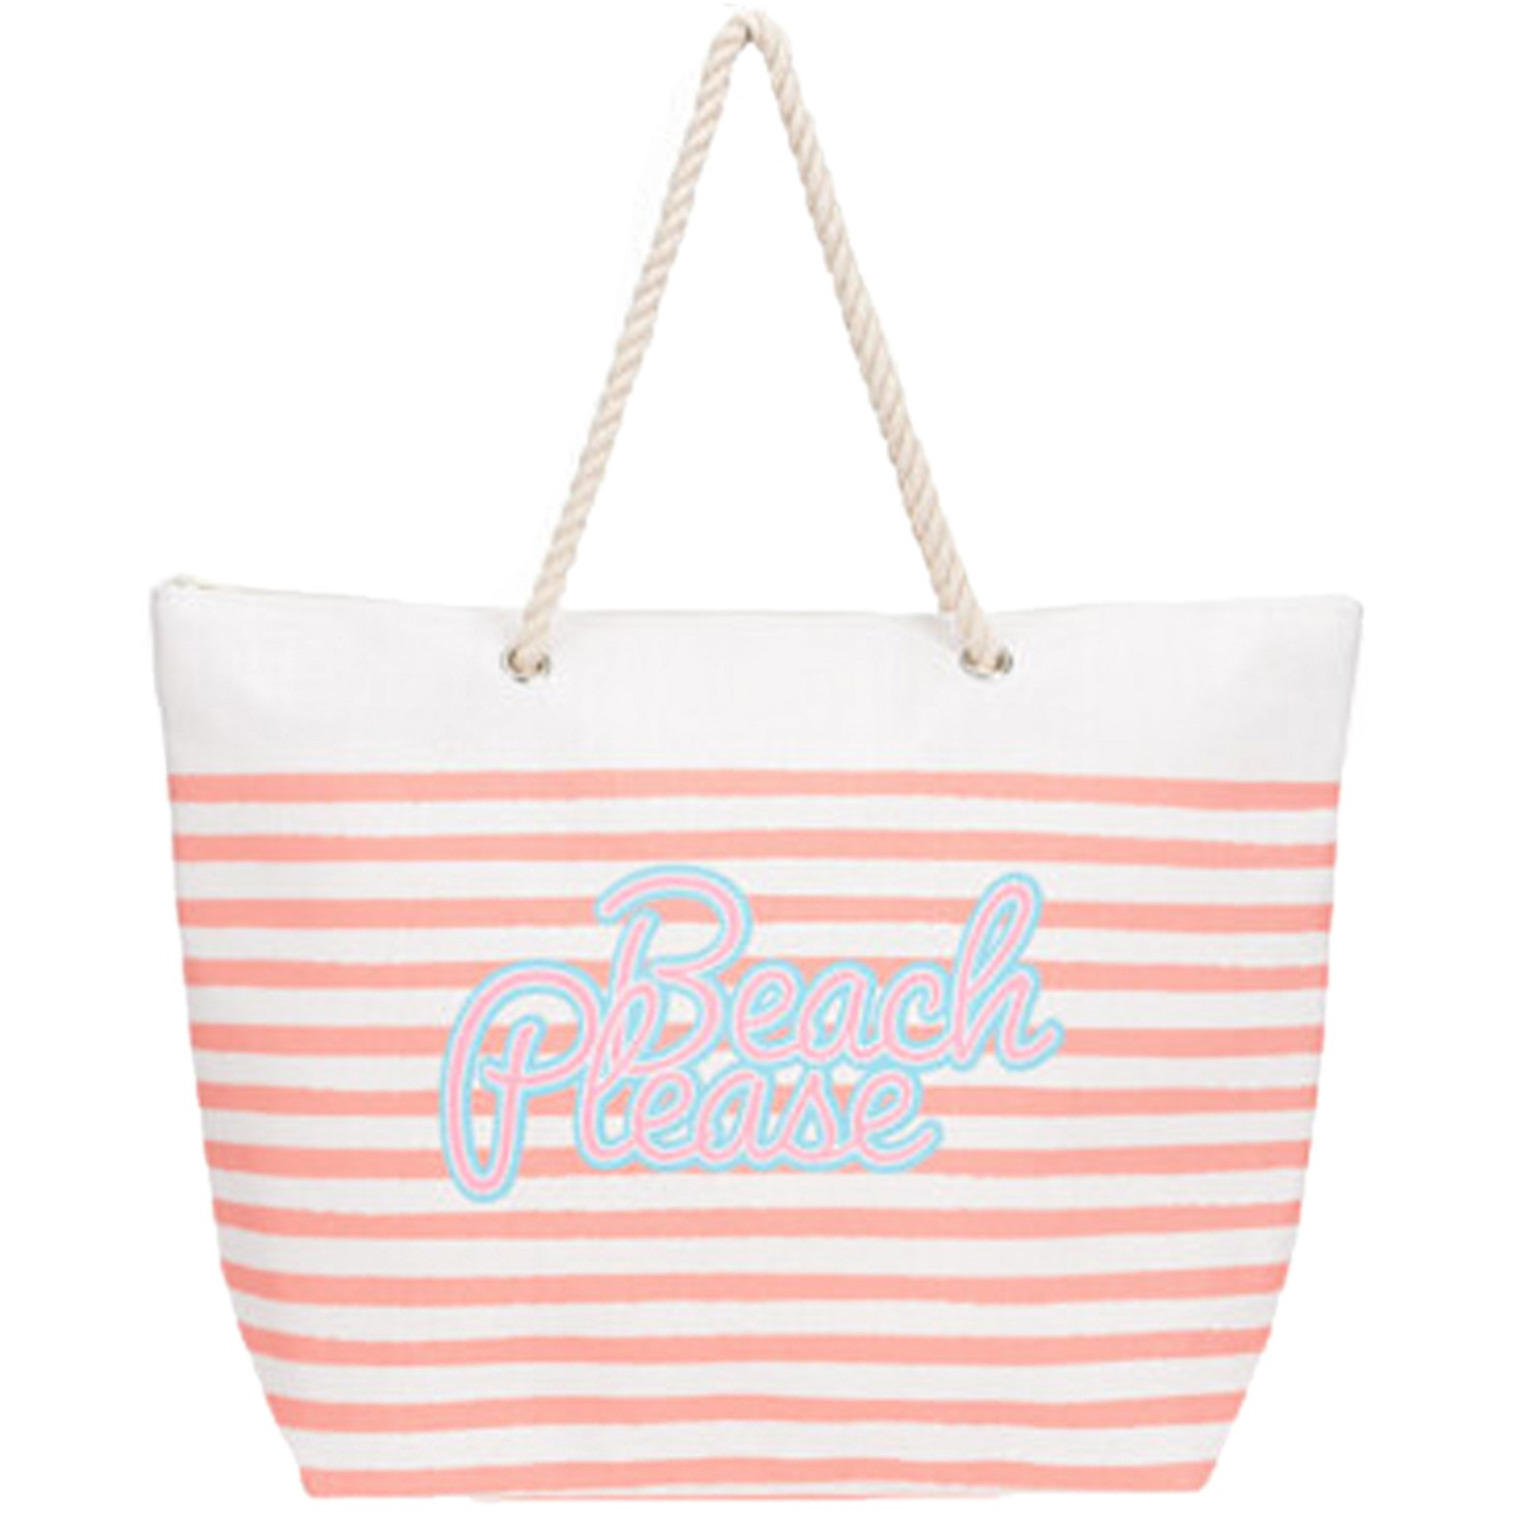 Strandtas met handvat wit-roze gestreept met Beach Please print polyester 38 x 39 cm